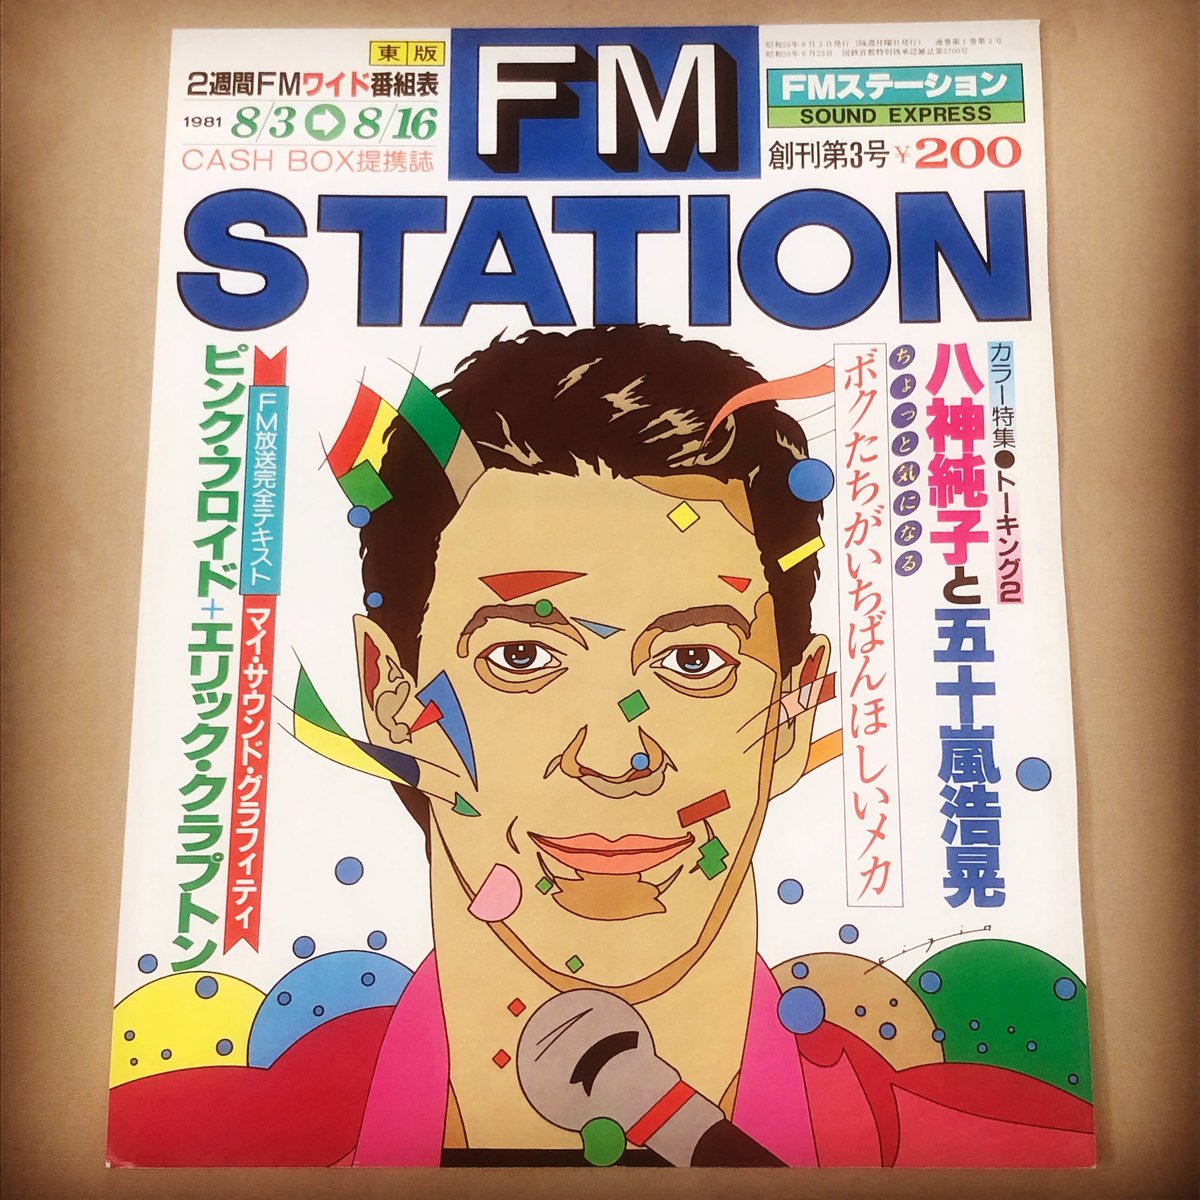 創刊第3号です。1981年8月3日発行

#イラストレーター #鈴木英人 #eizinsuzuki #fmstation #人物画 #illustrated #musicaudio  #fm東京 #懐かしい曲 #音楽雑誌 